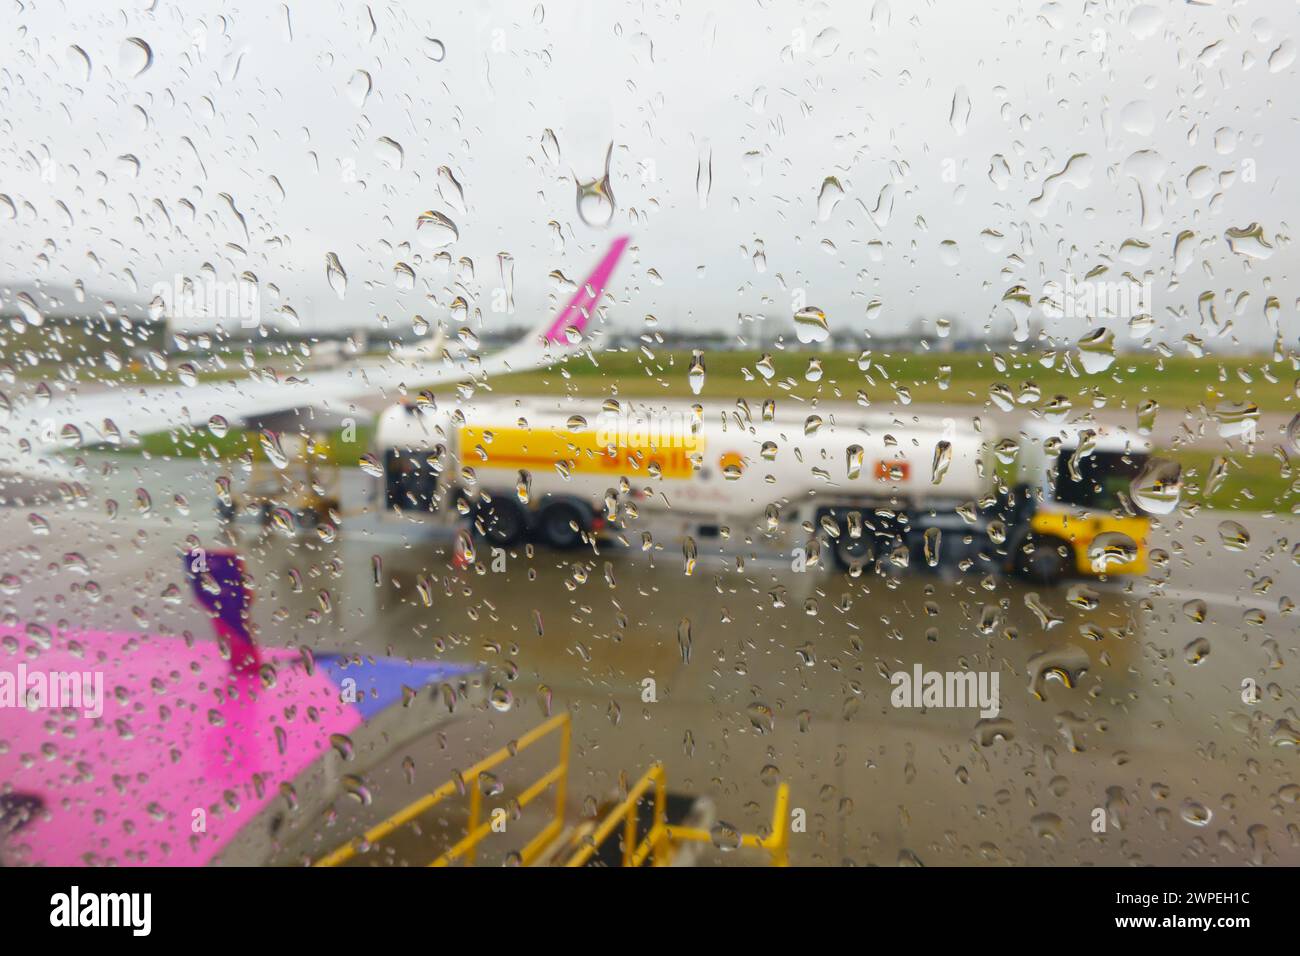 Les jours de pluie, des gouttes de pluie sur une fenêtre d'avion de ligne, diffusant le réservoir de carburant d'aviation et l'aile de l'avion, sur l'aire de trafic de l'aéroport de Londres Luton. Banque D'Images